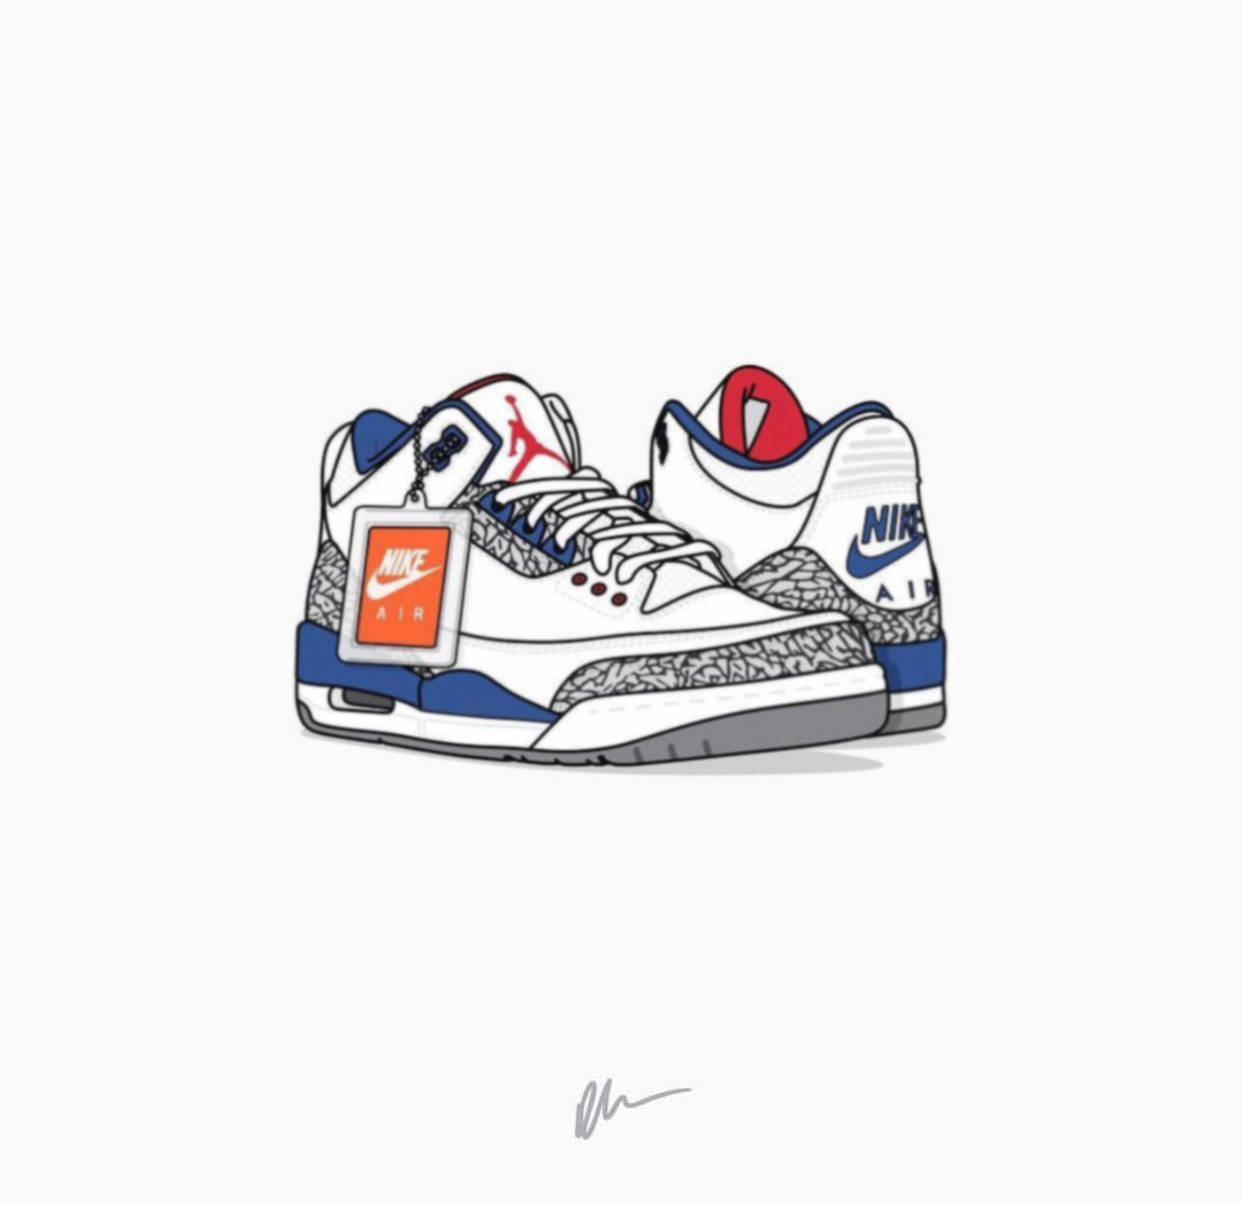 Air Jordan 3 Cartoon Shoe Wallpaper